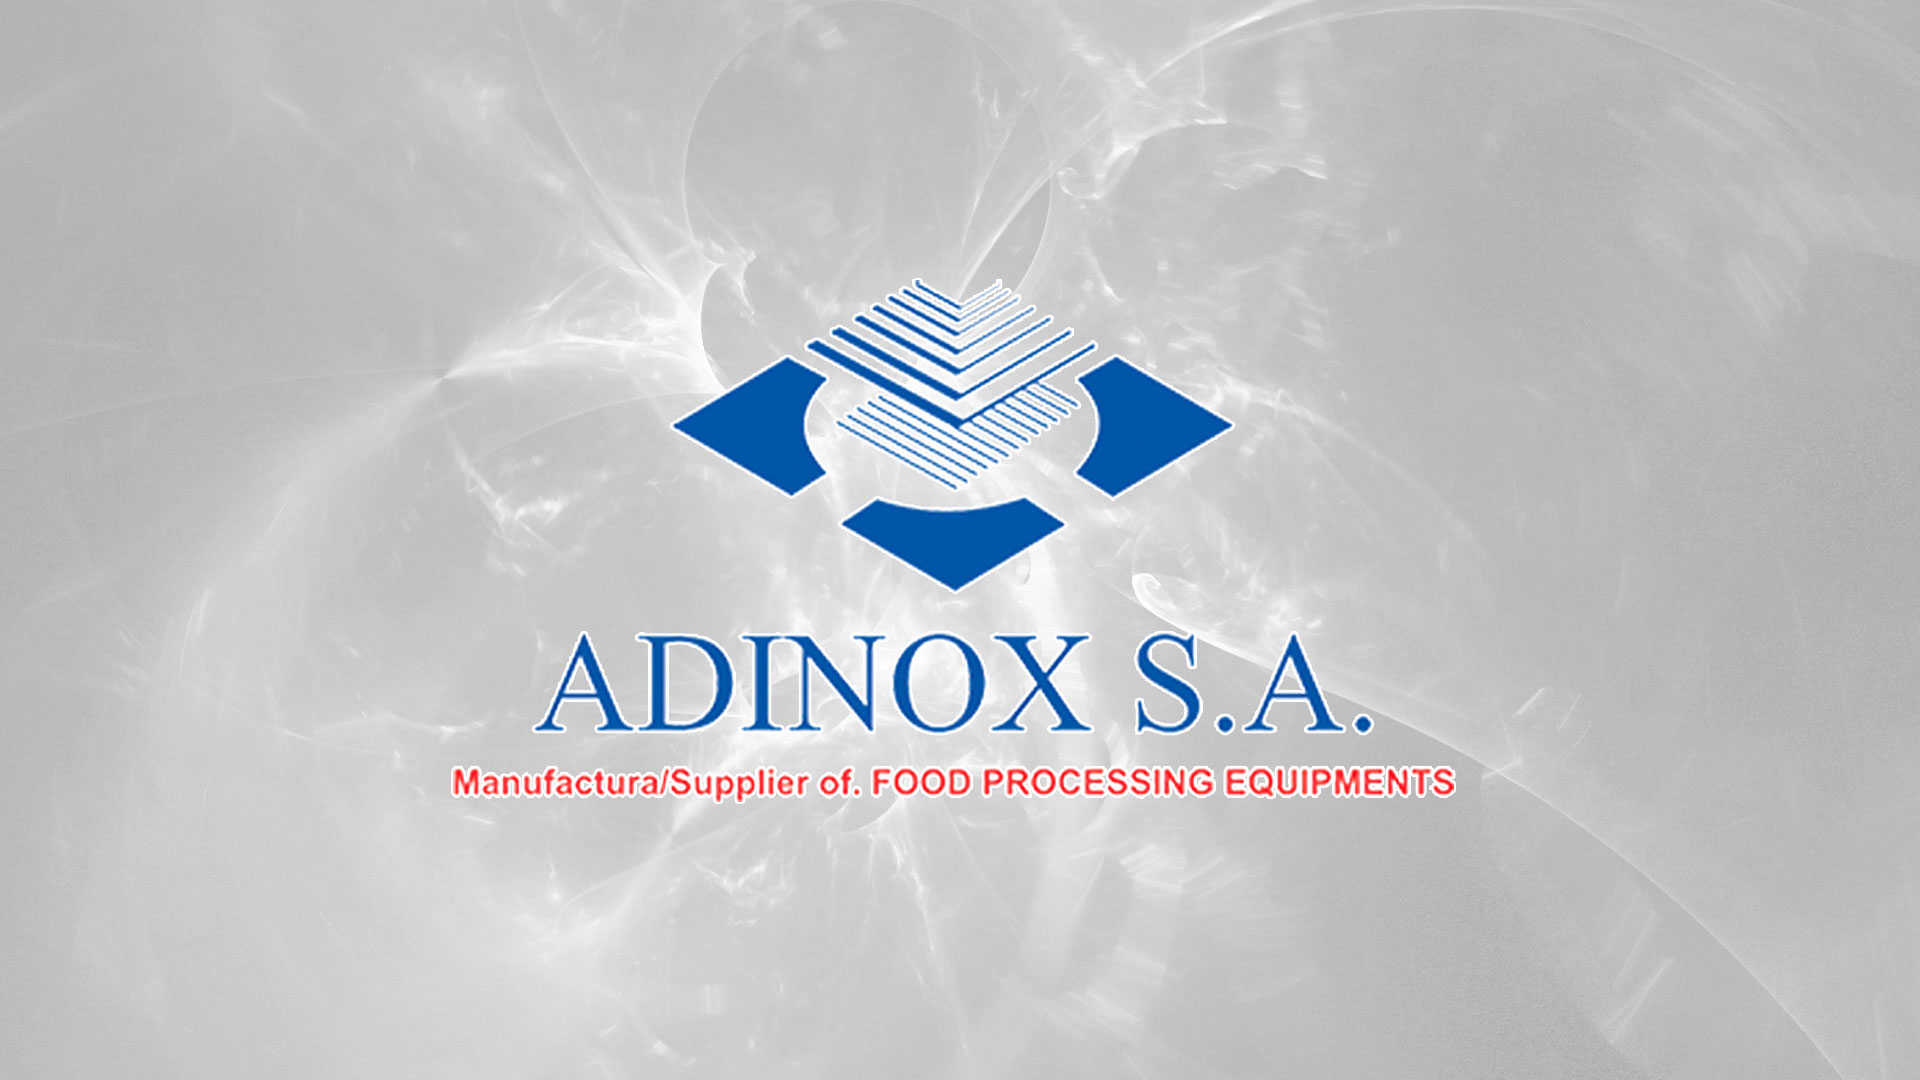 Adinox